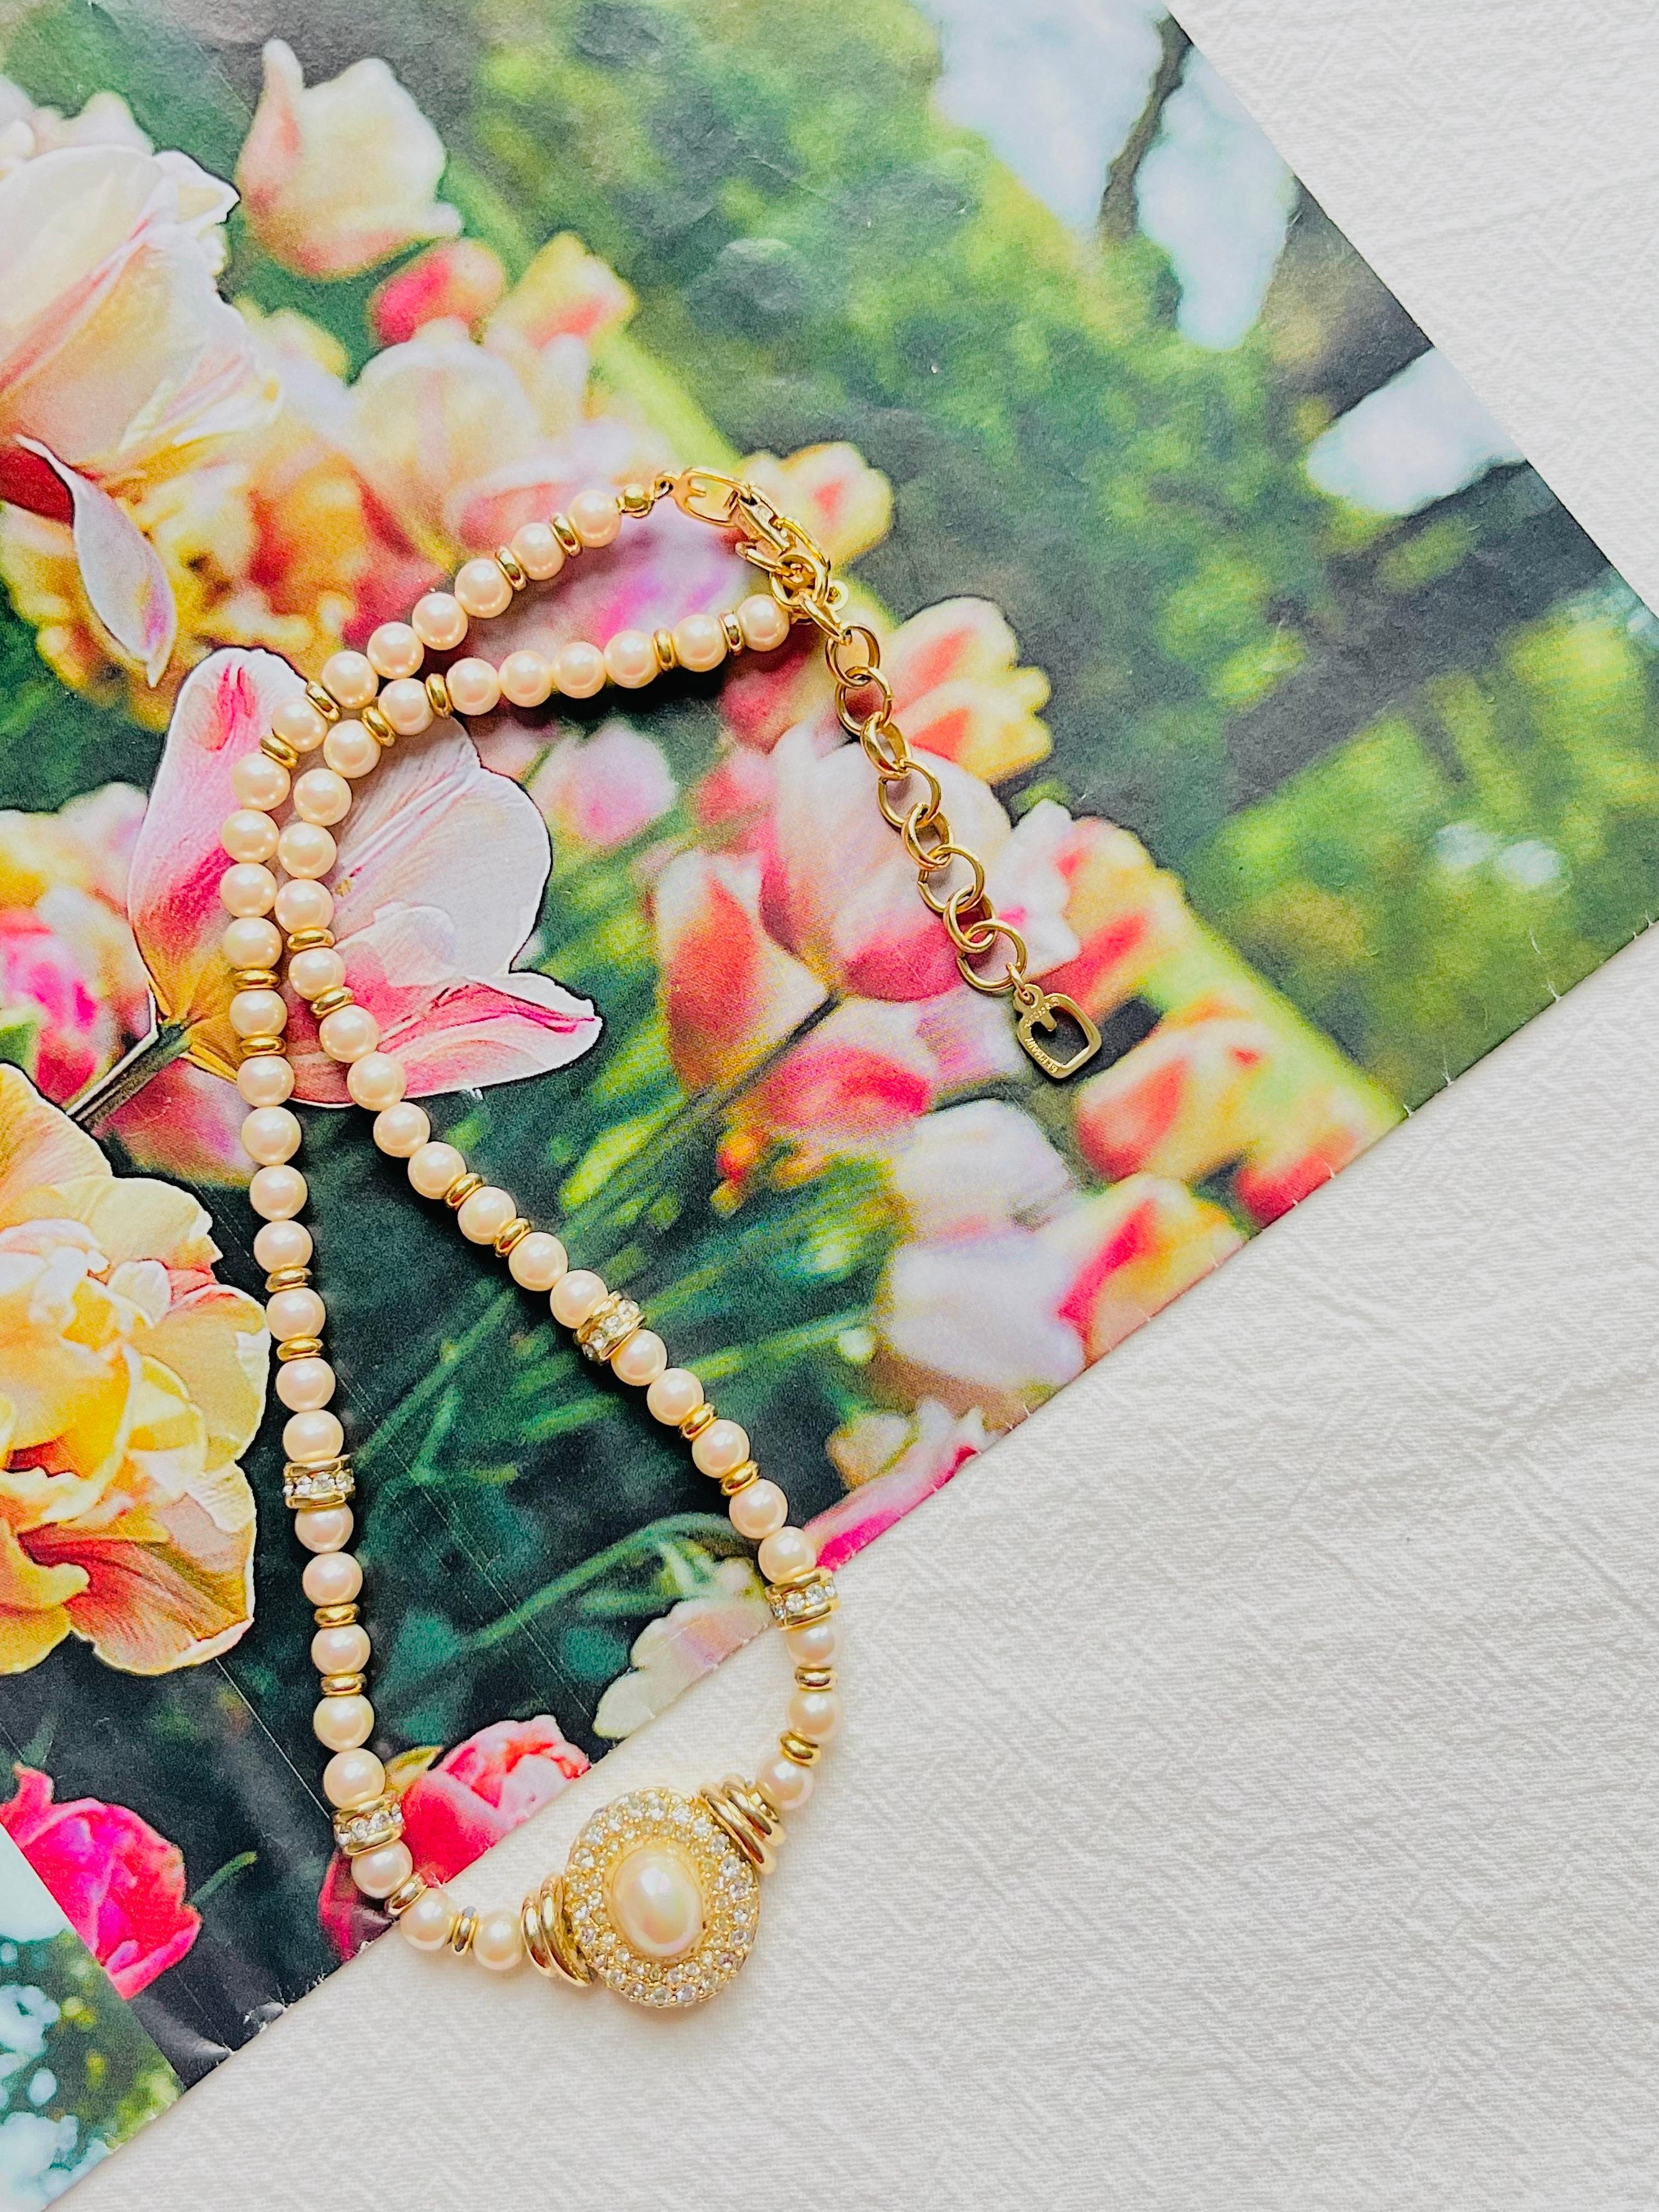 Christian Dior GROSSE 1960s Weißer Ovaler Kristall Anhänger Perlen Halskette, vergoldet

Sehr guter Zustand. Leichte Kratzer oder Farbverluste, kaum wahrnehmbar. 100% echt.

Markiert am Verschluss und an der verlängerten Kette. Selten zu